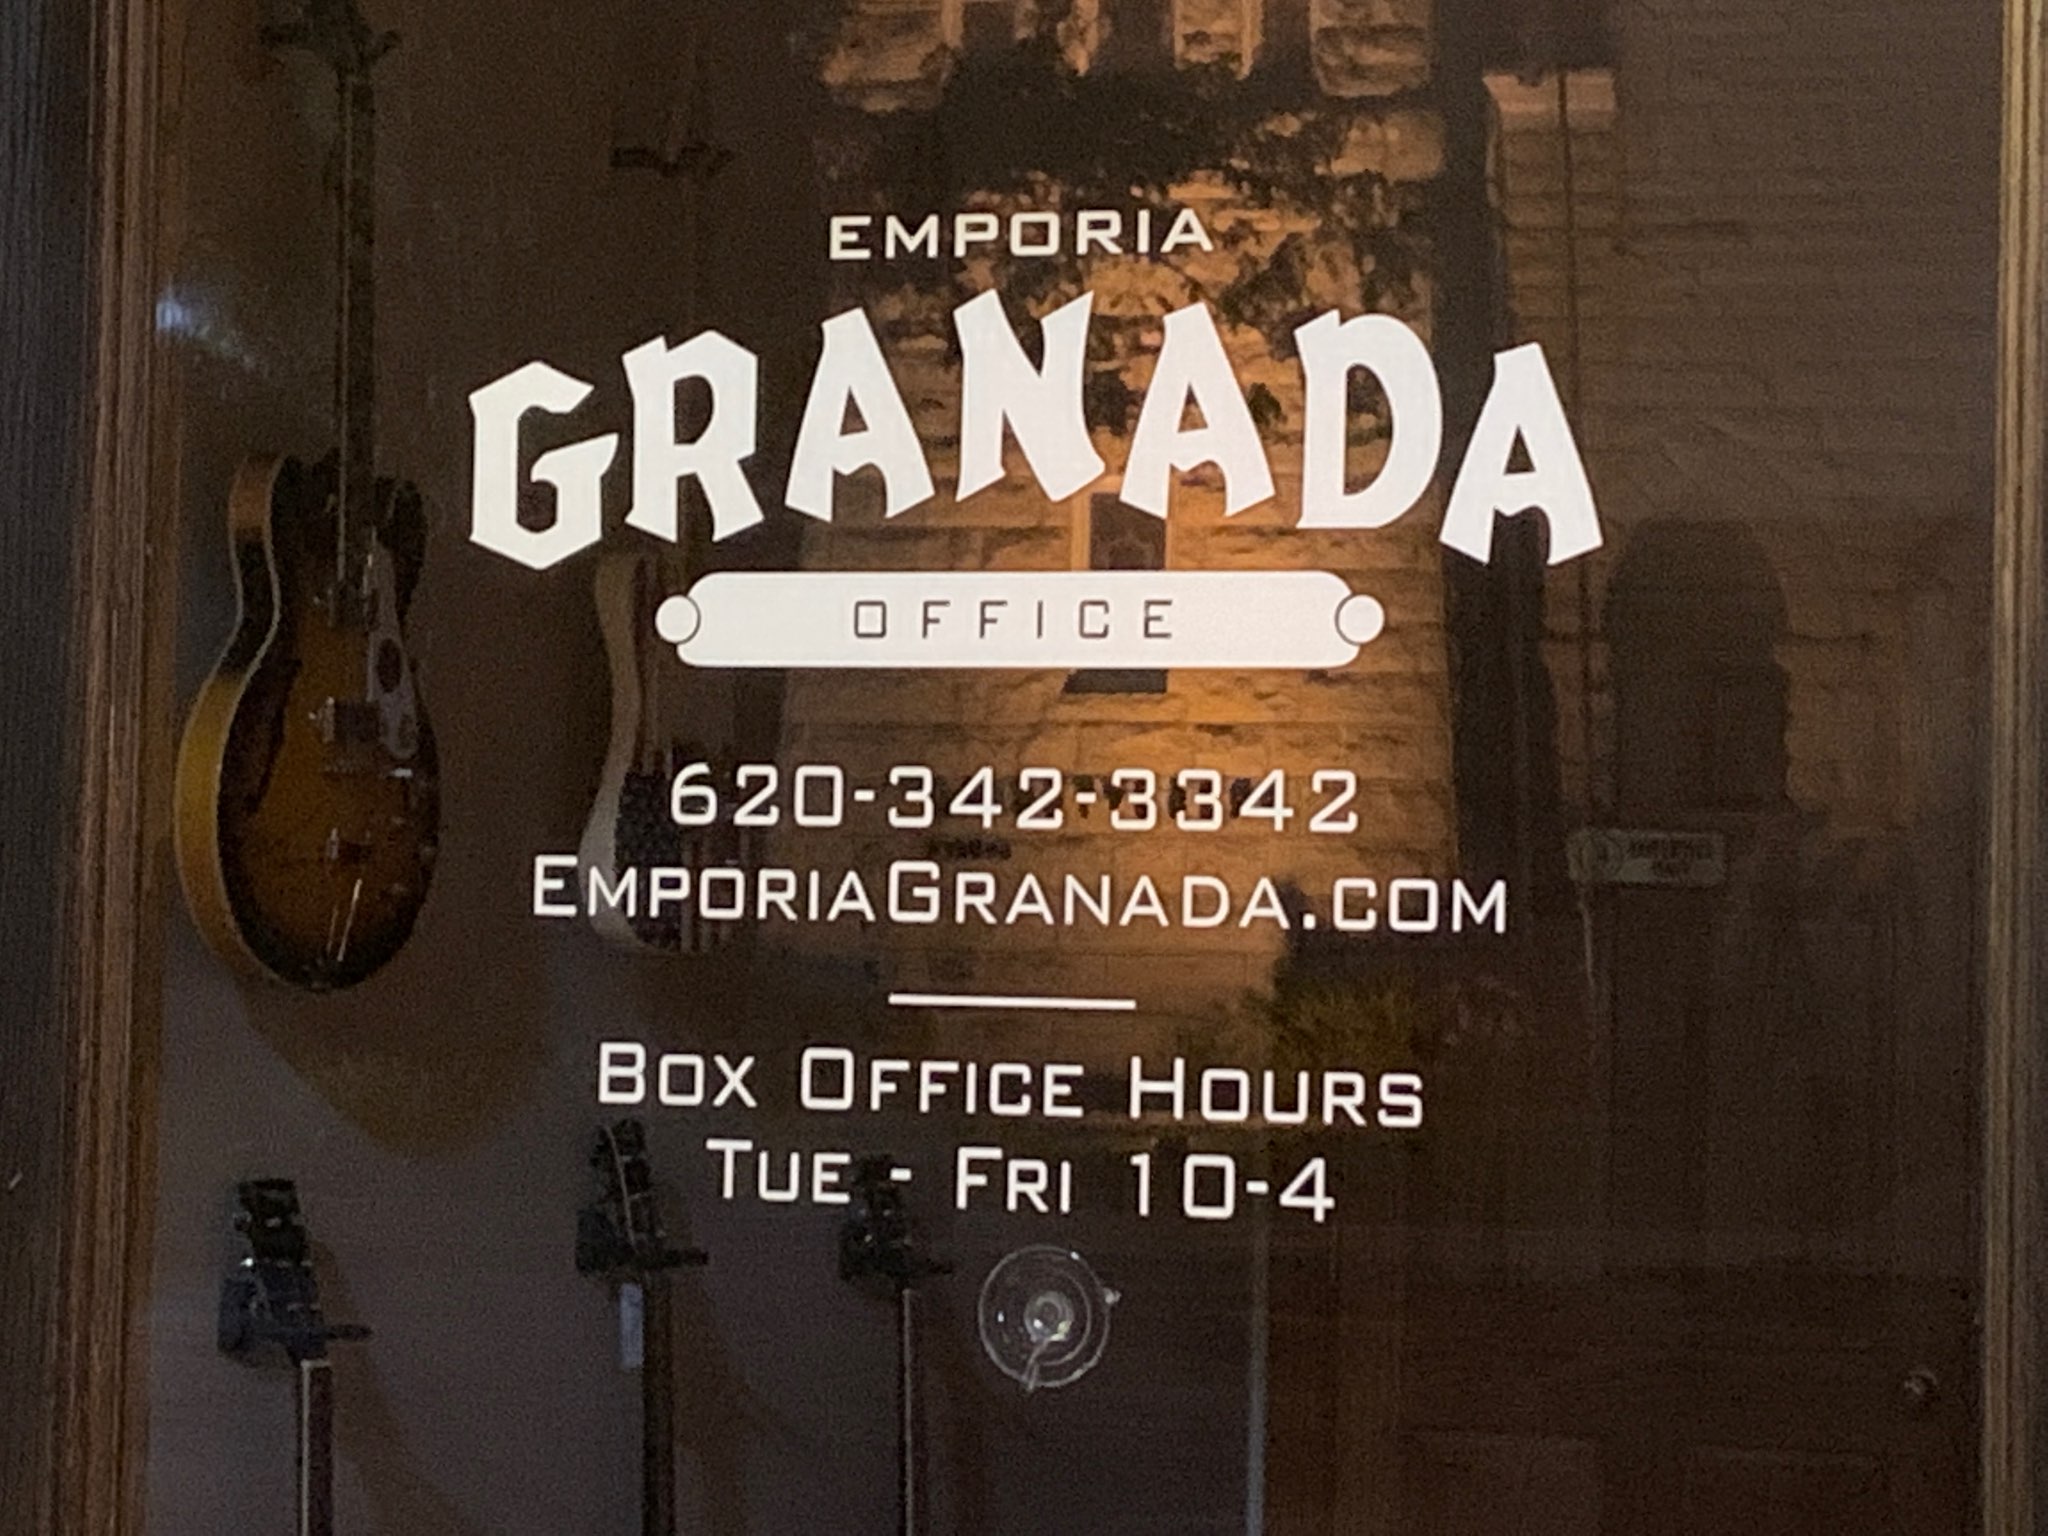 Emporia Granada Theatre planning 'complete search' for new permanent director